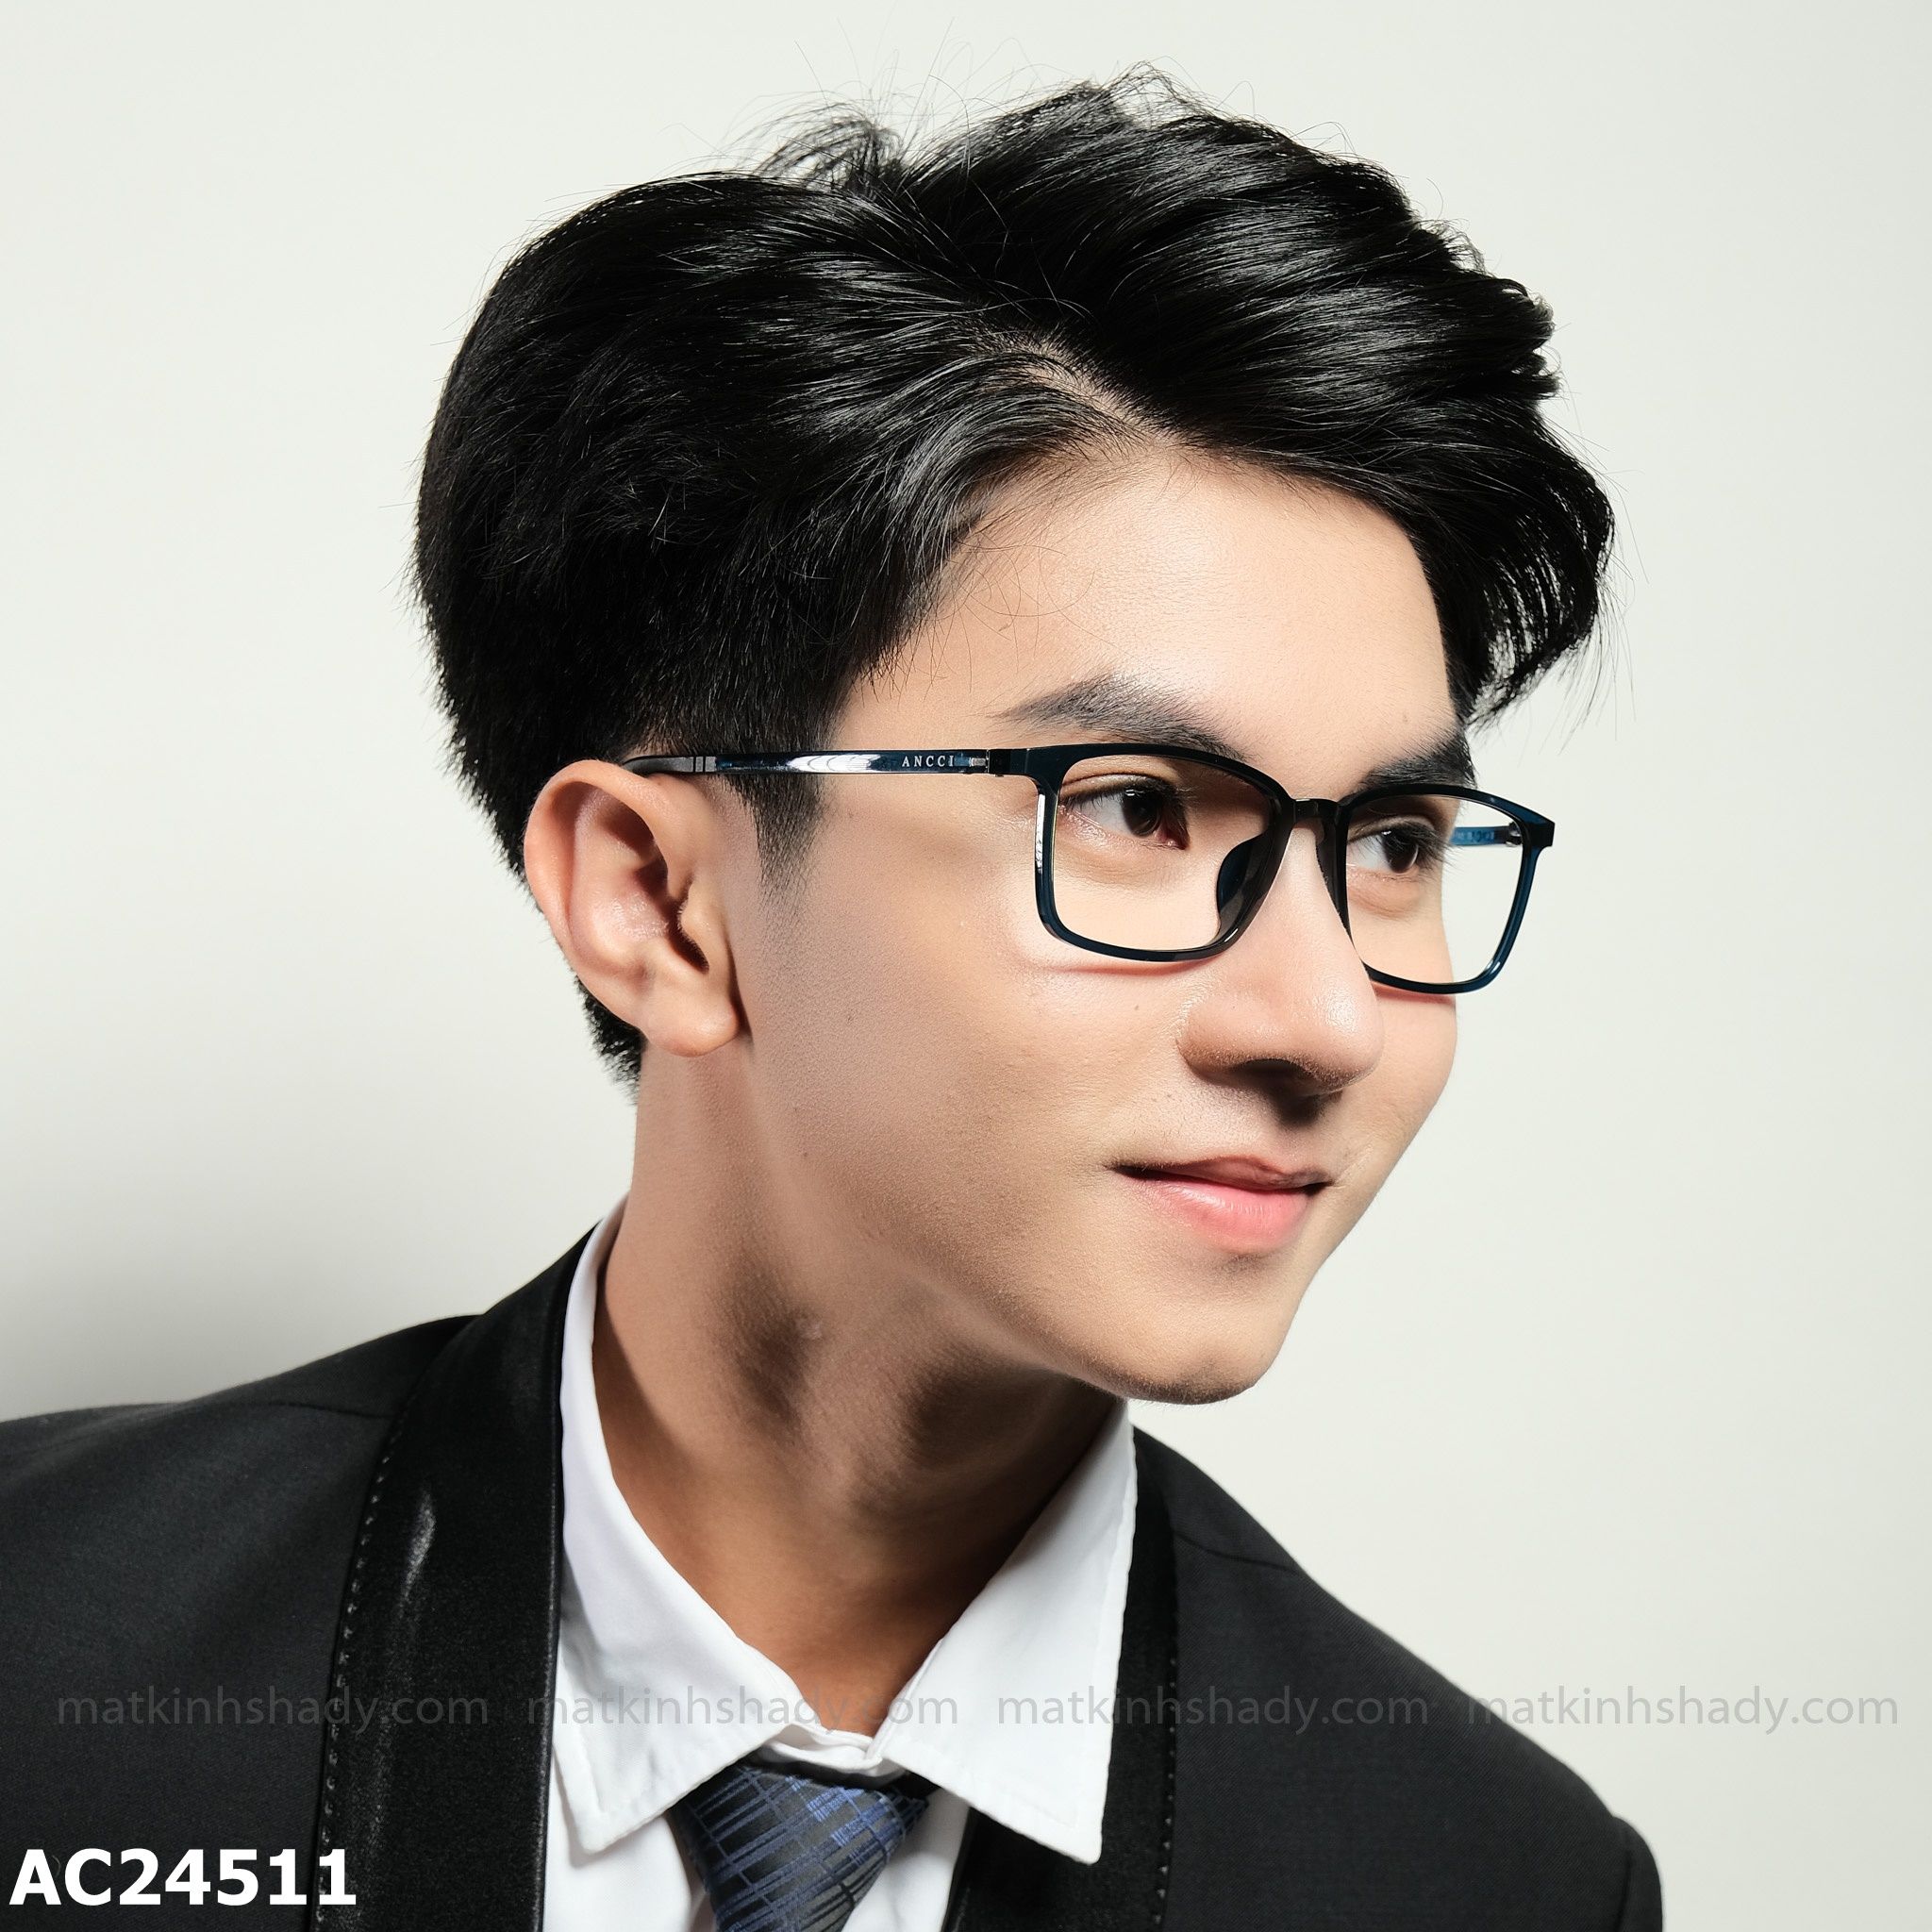  ANCCI Eyewear - Glasses - AC24511 